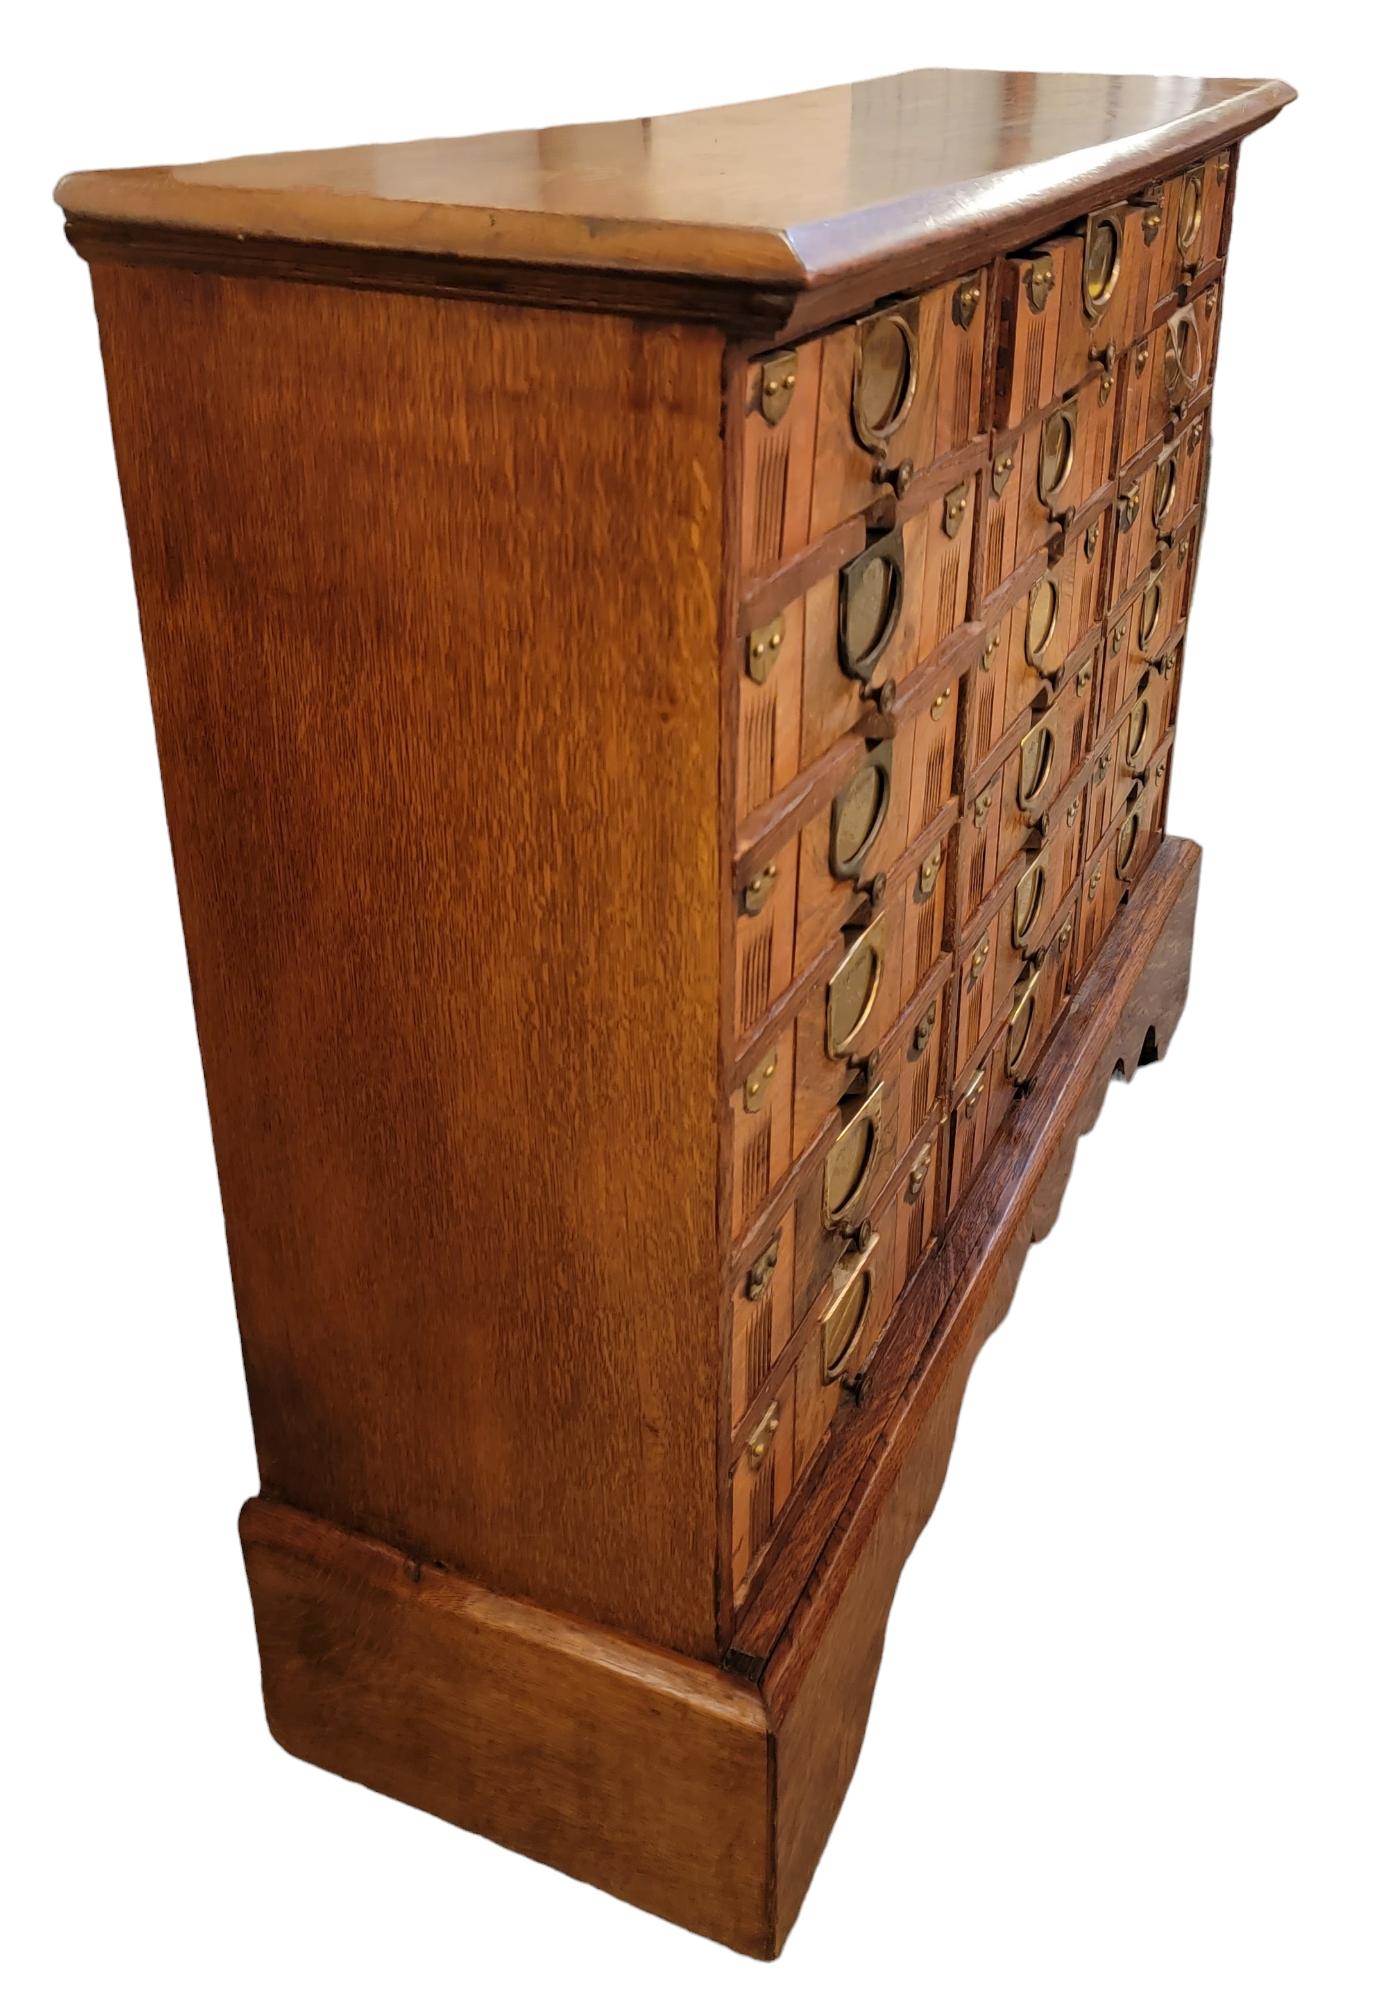 Classeur de banque du 19e siècle avec accents en laiton. Magnifique bois vieilli, belle patine du laiton et des bois environnants. Certains tiroirs portent des noms ou des dates imprimés sur le laiton. Il manque un bouton à l'un des tiroirs.